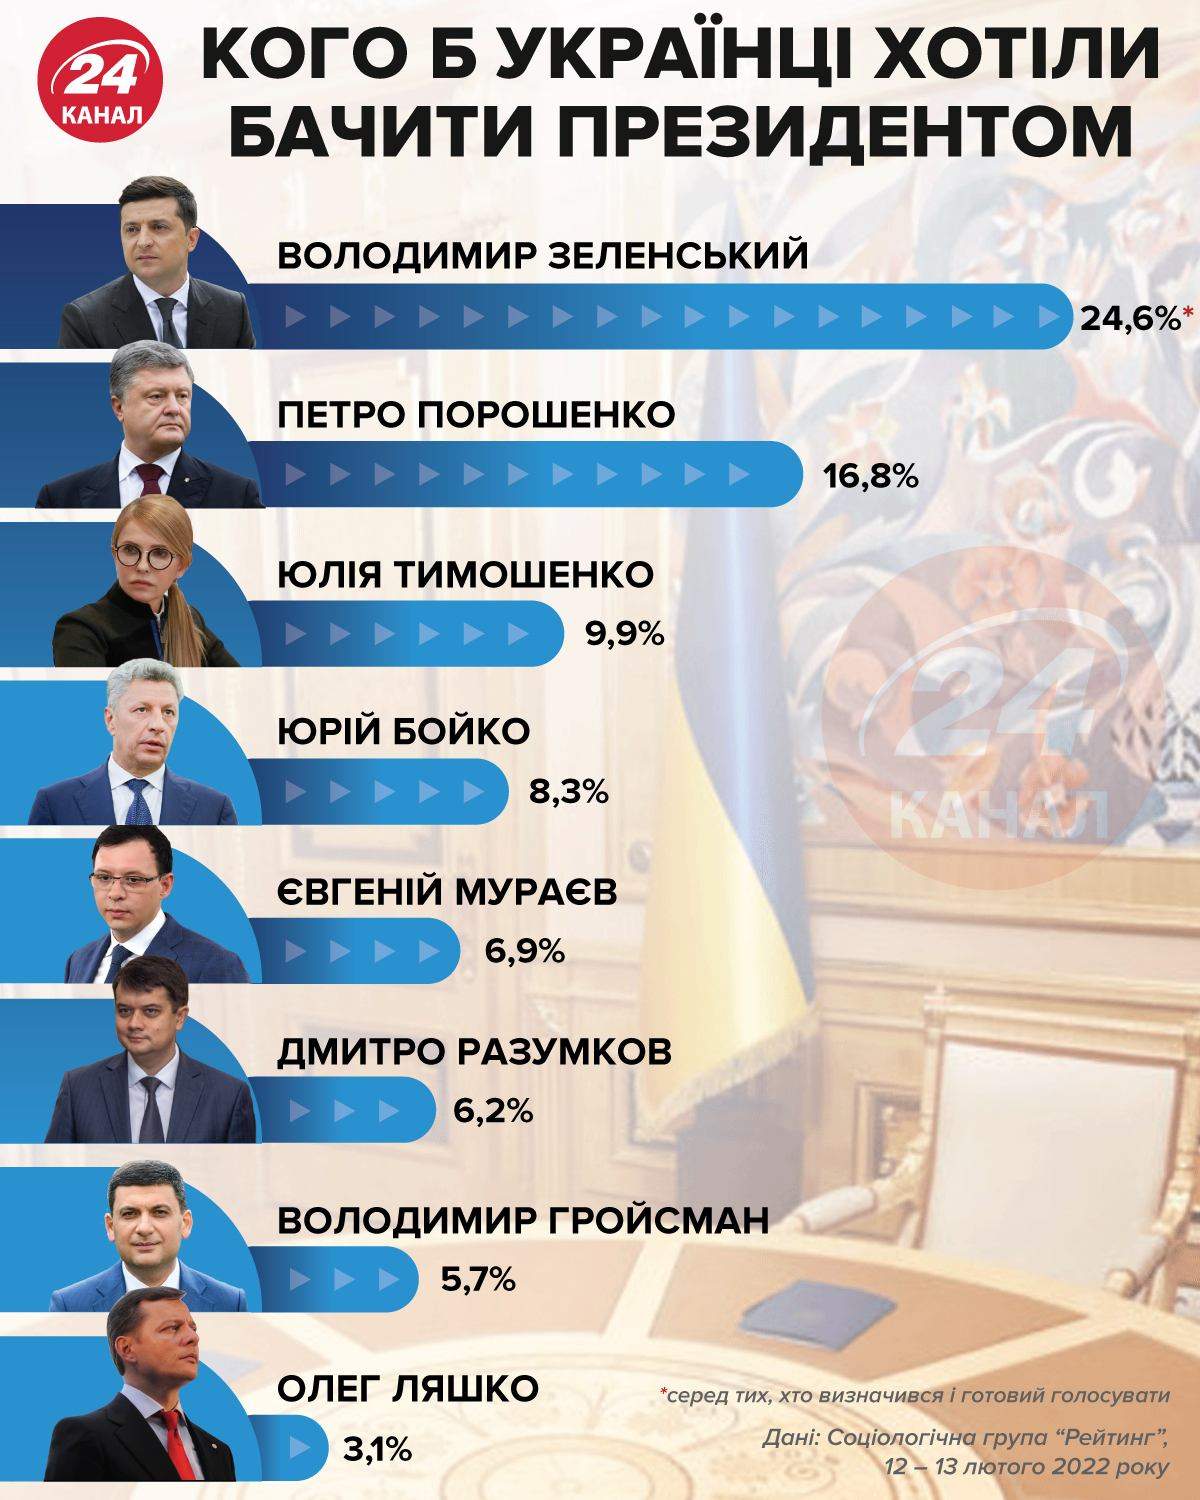 Кого б хотіли бачити українці президентом